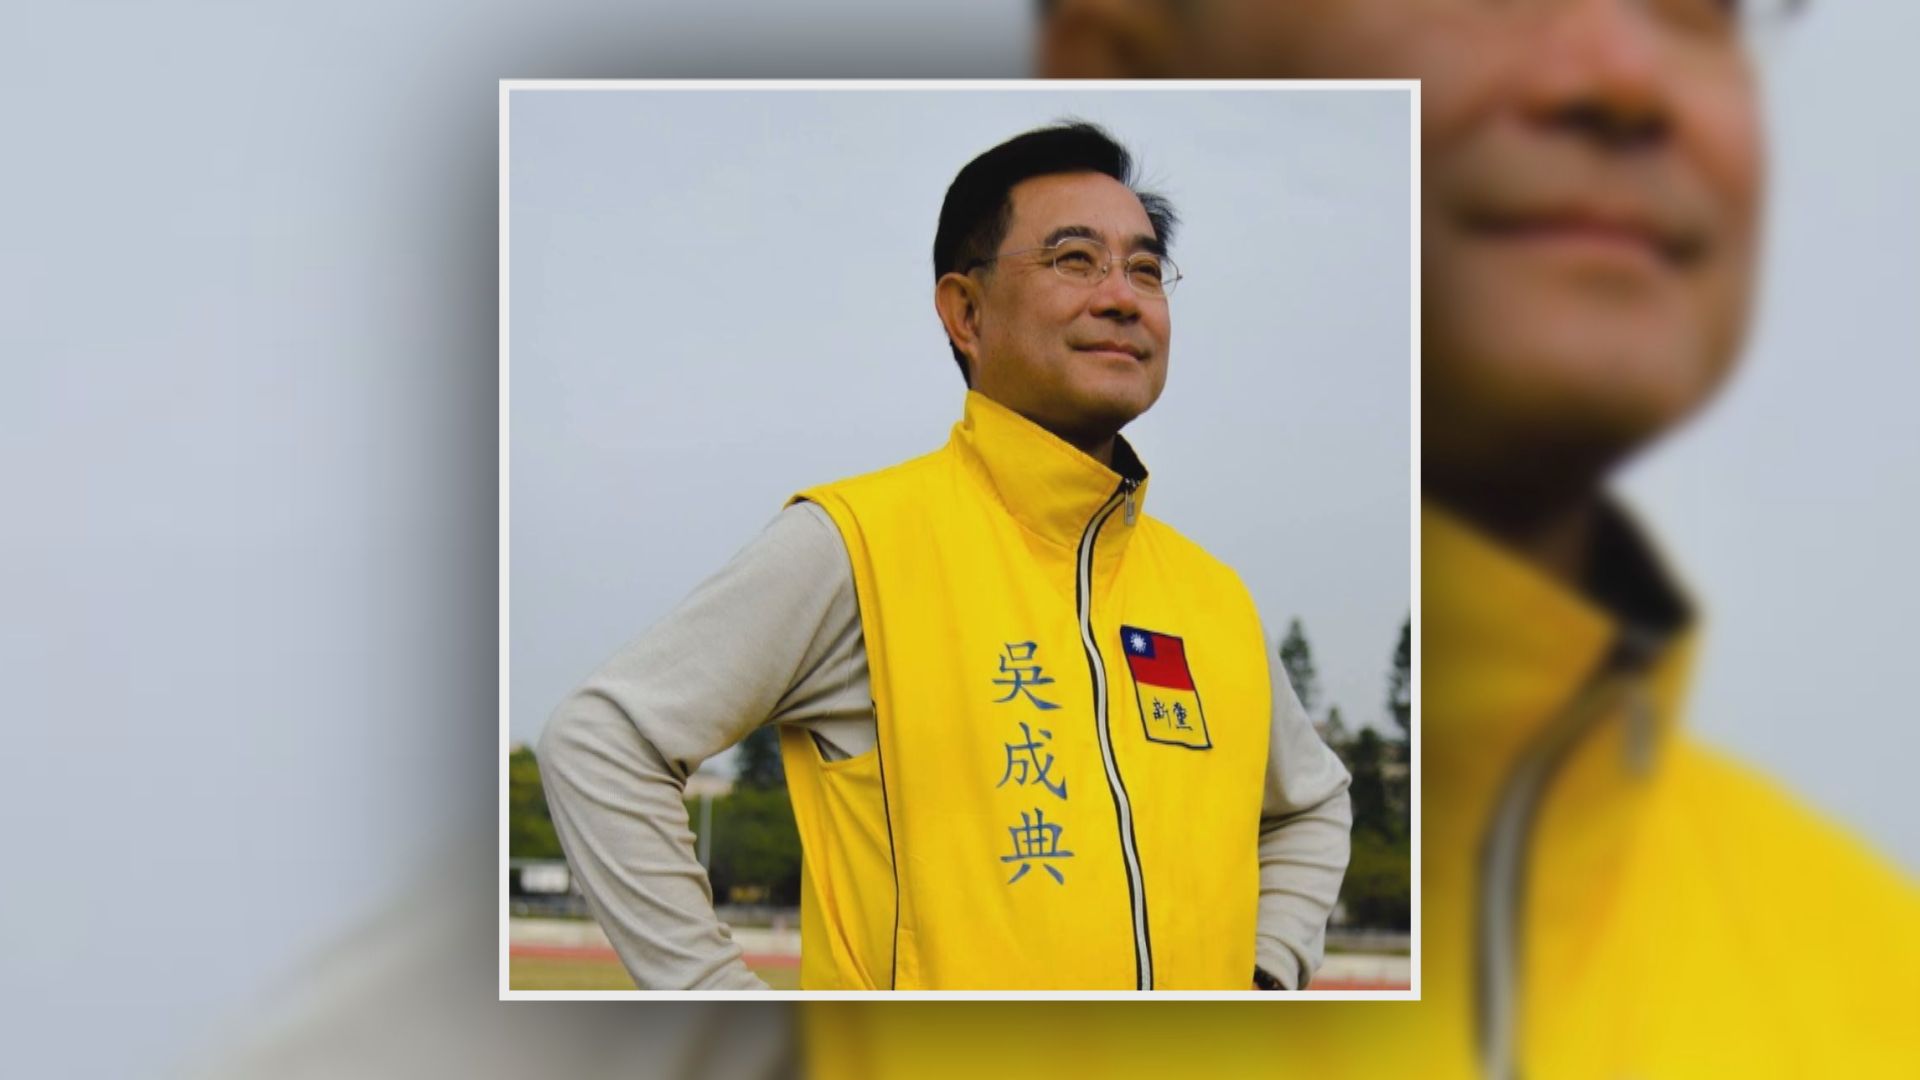 台灣新黨主席吳成典將出席北京冬奧閉幕式